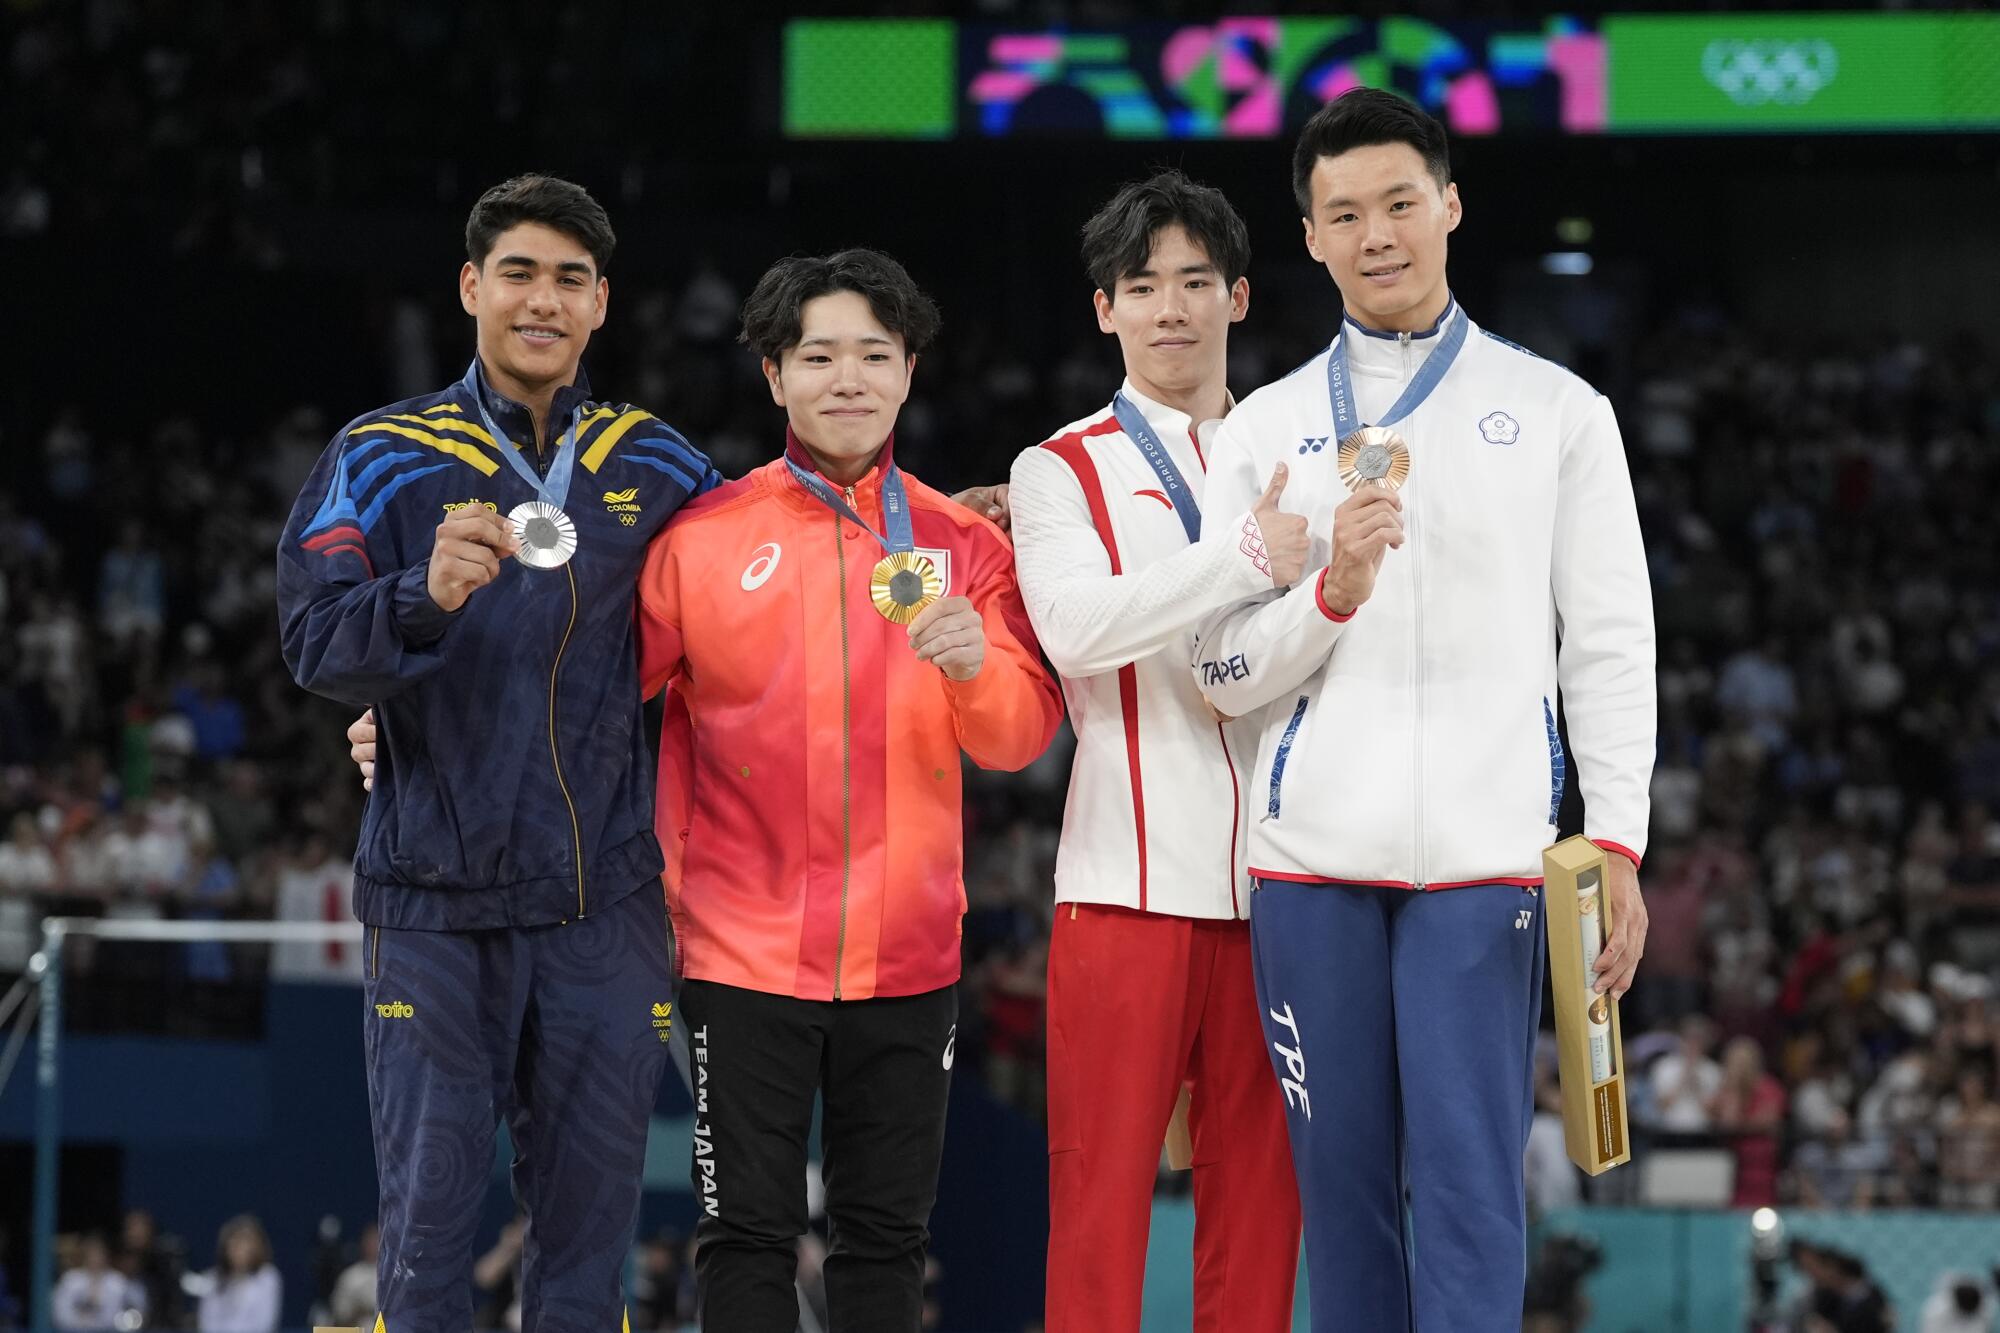 Four gymnasts made the men's horizontal bar podium at the Paris Olympics.